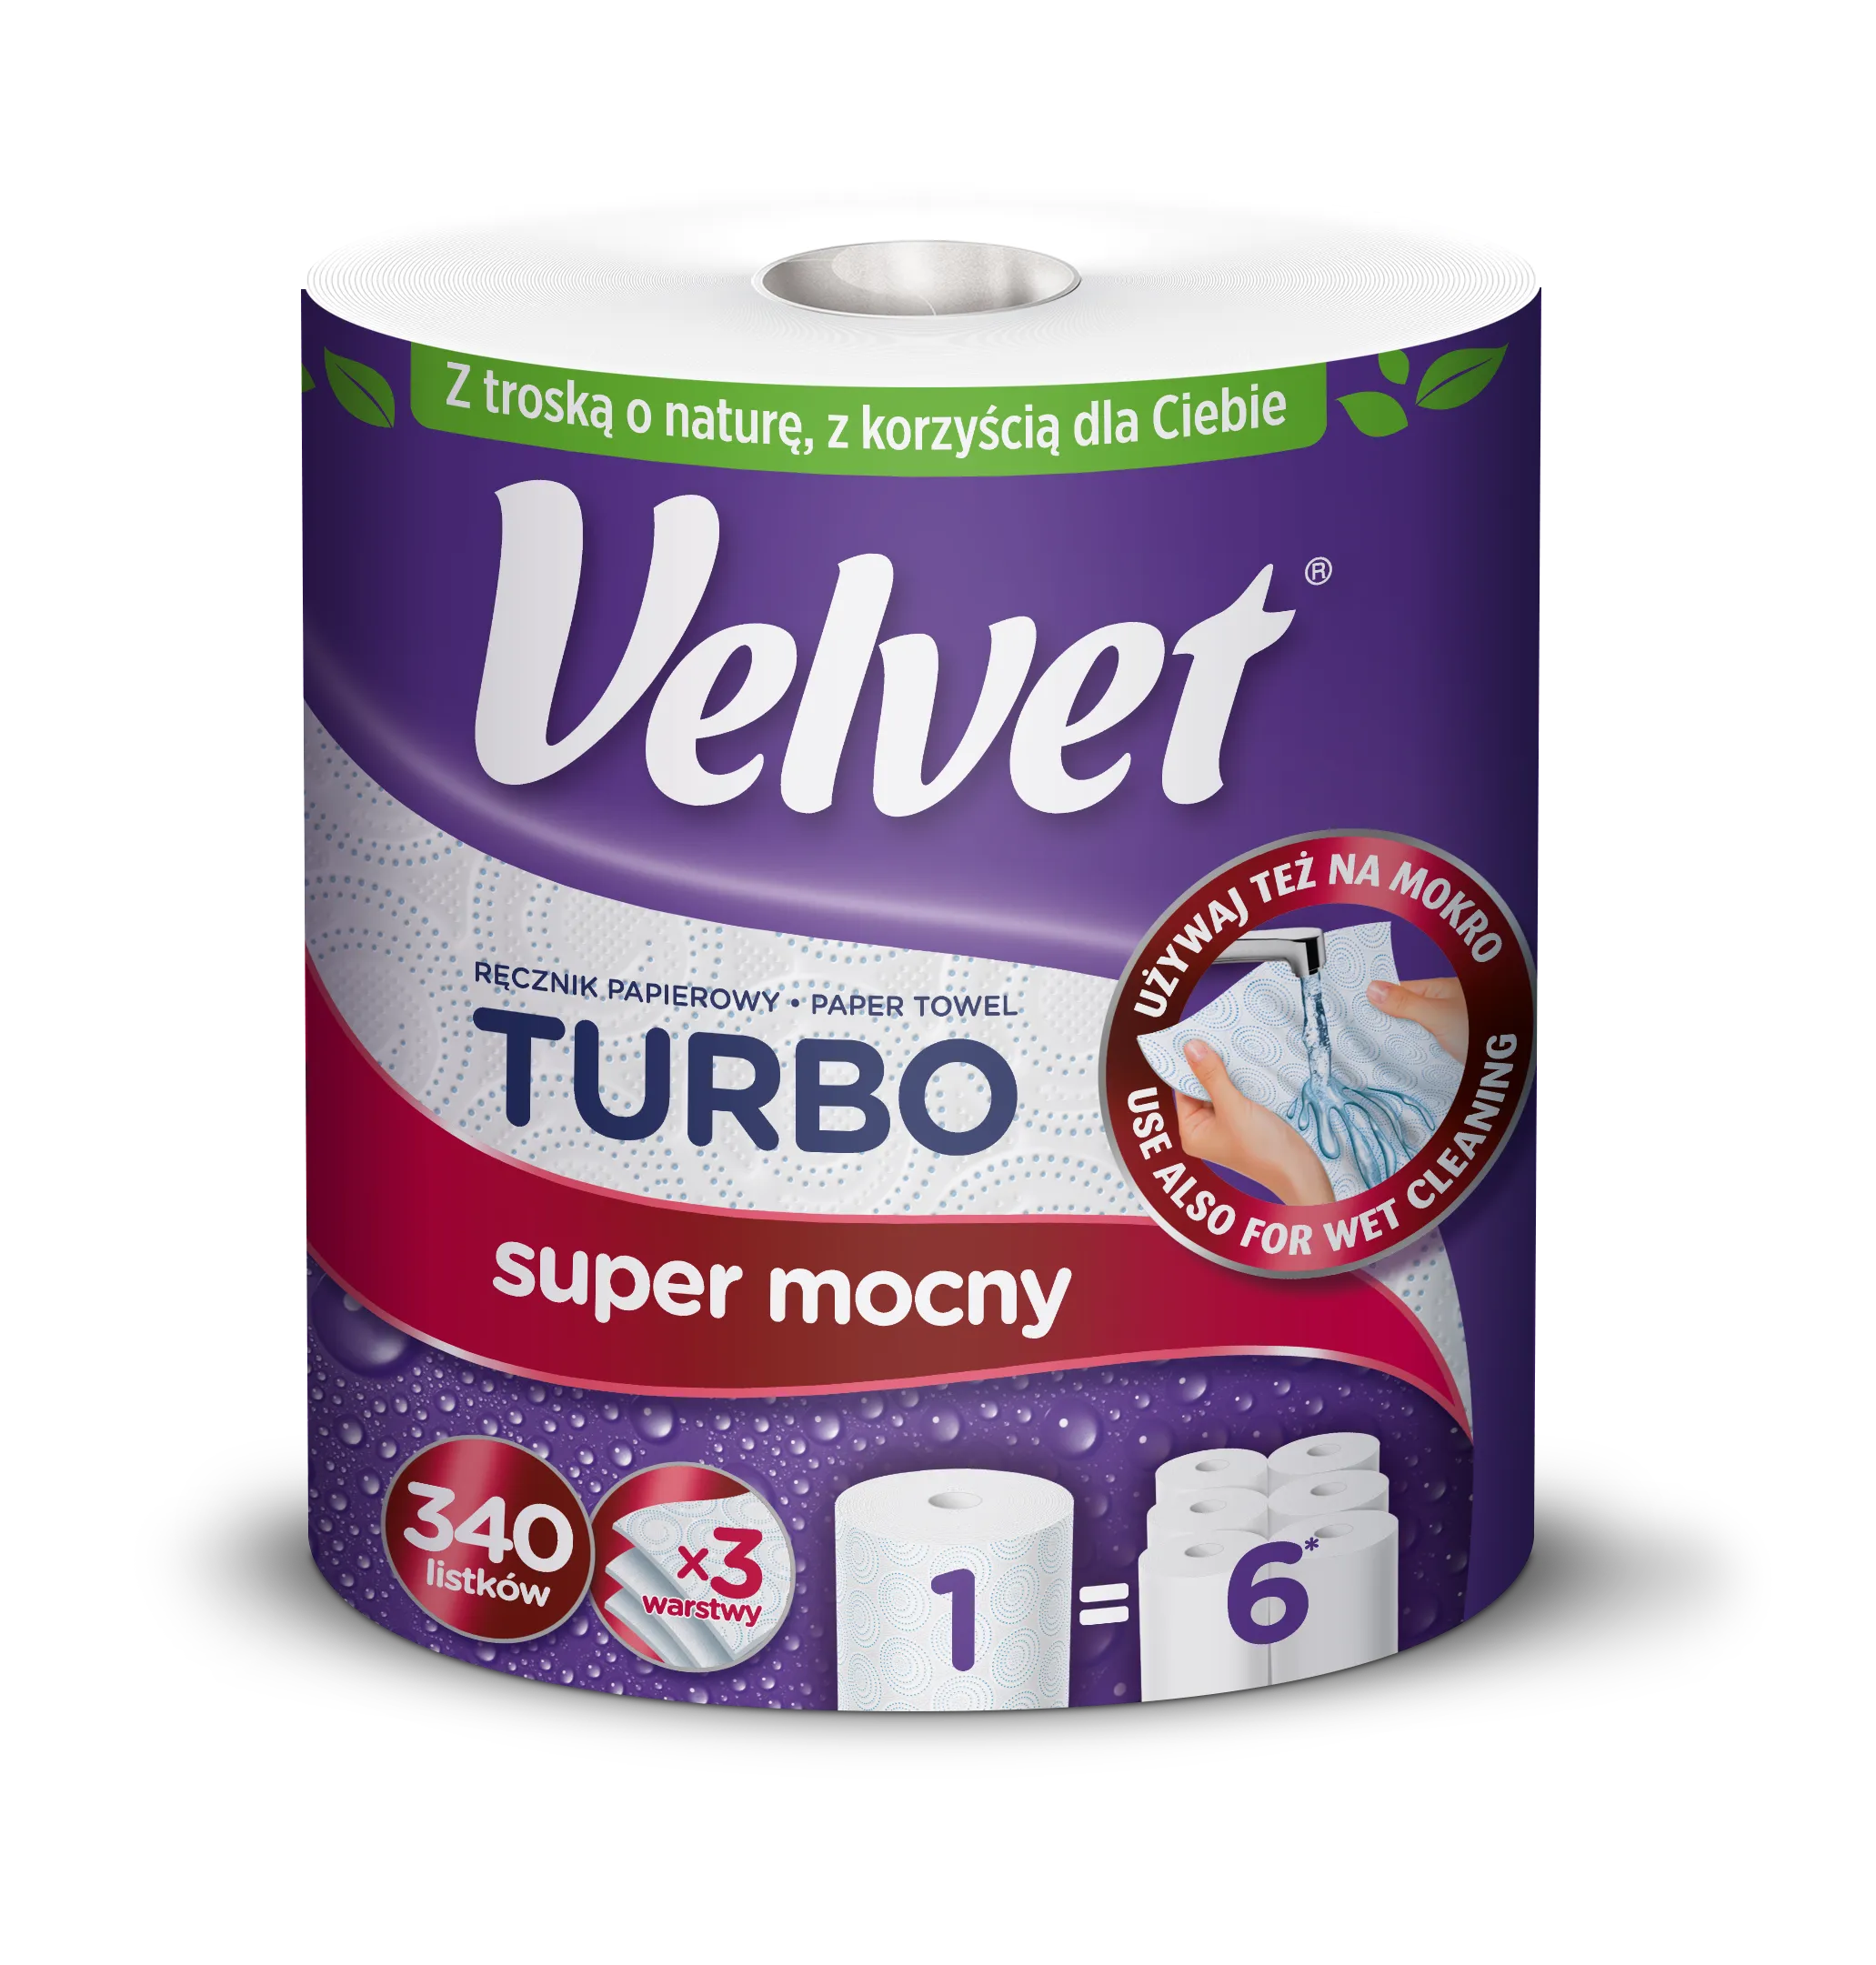 Velvet Turbo Ręcznik papierowy, 1 szt.